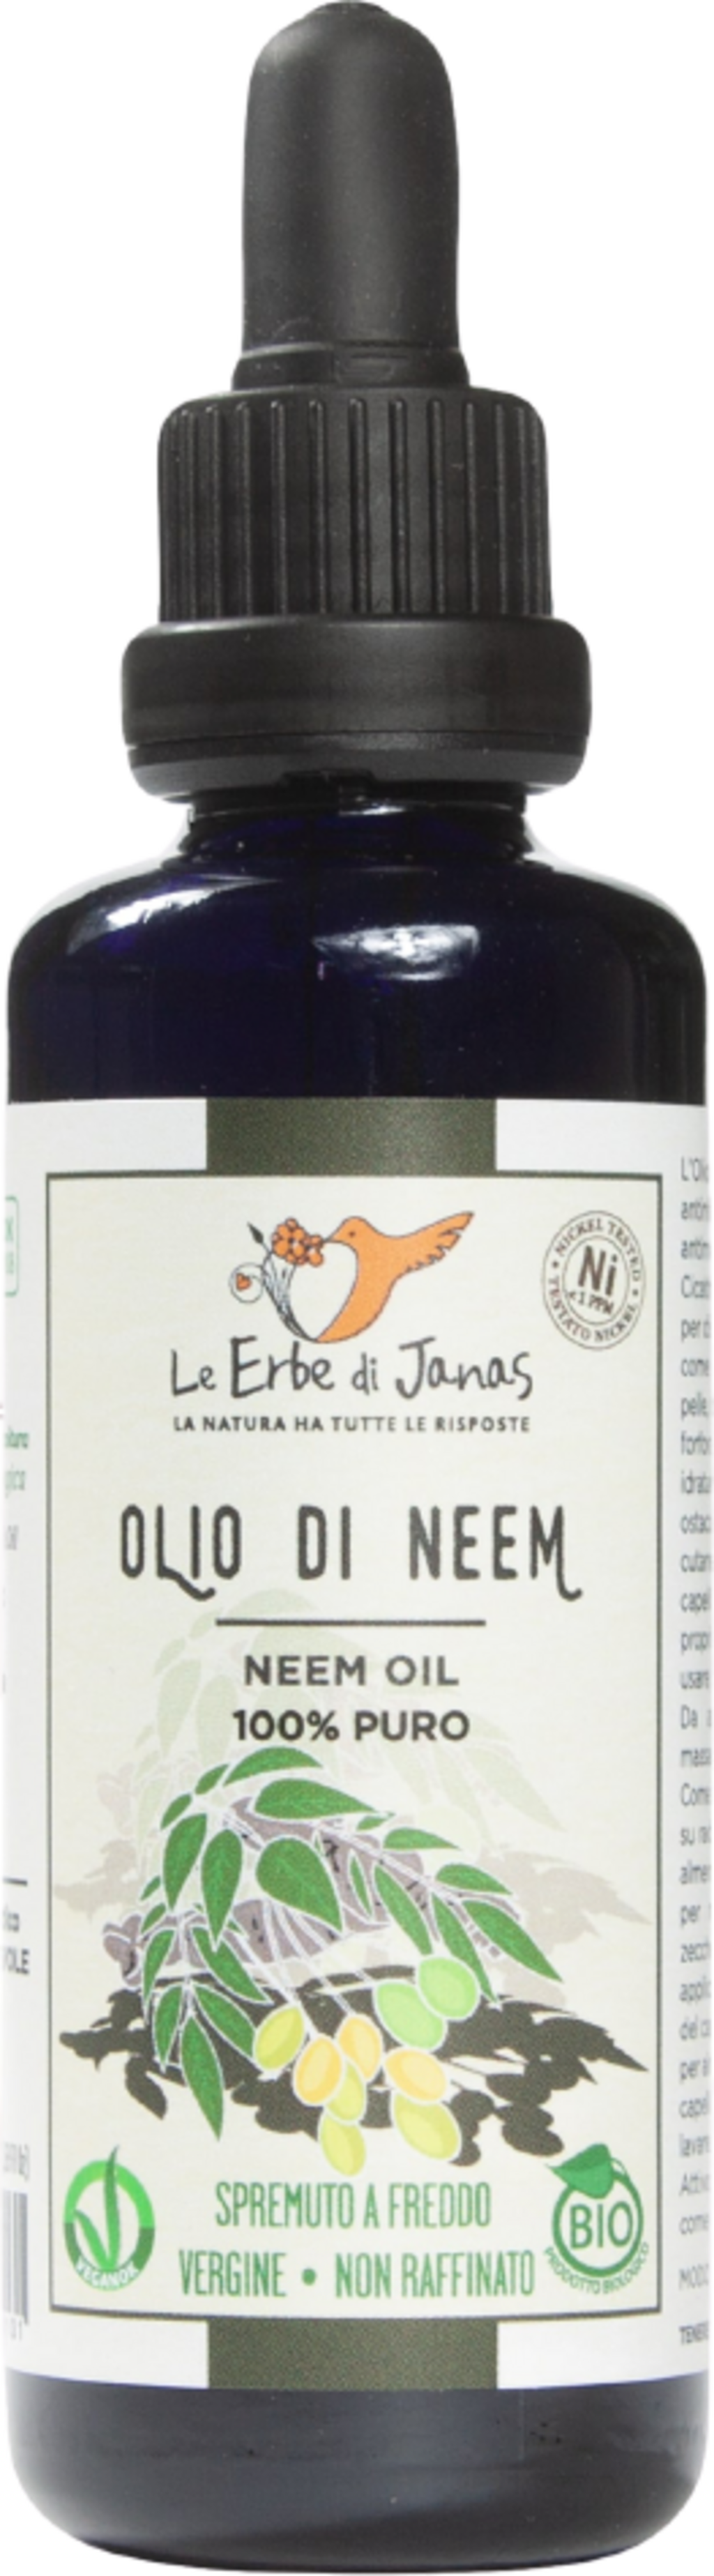 Le Erbe di Janas Neem Oil - 50 ml